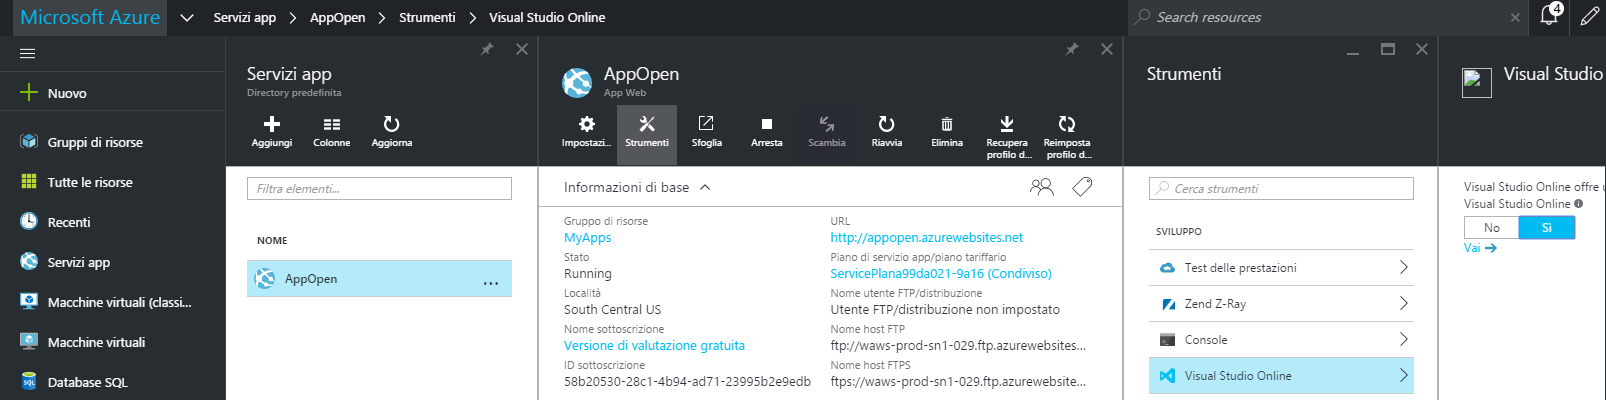 Attivazione di Visual Studio Online su Azure